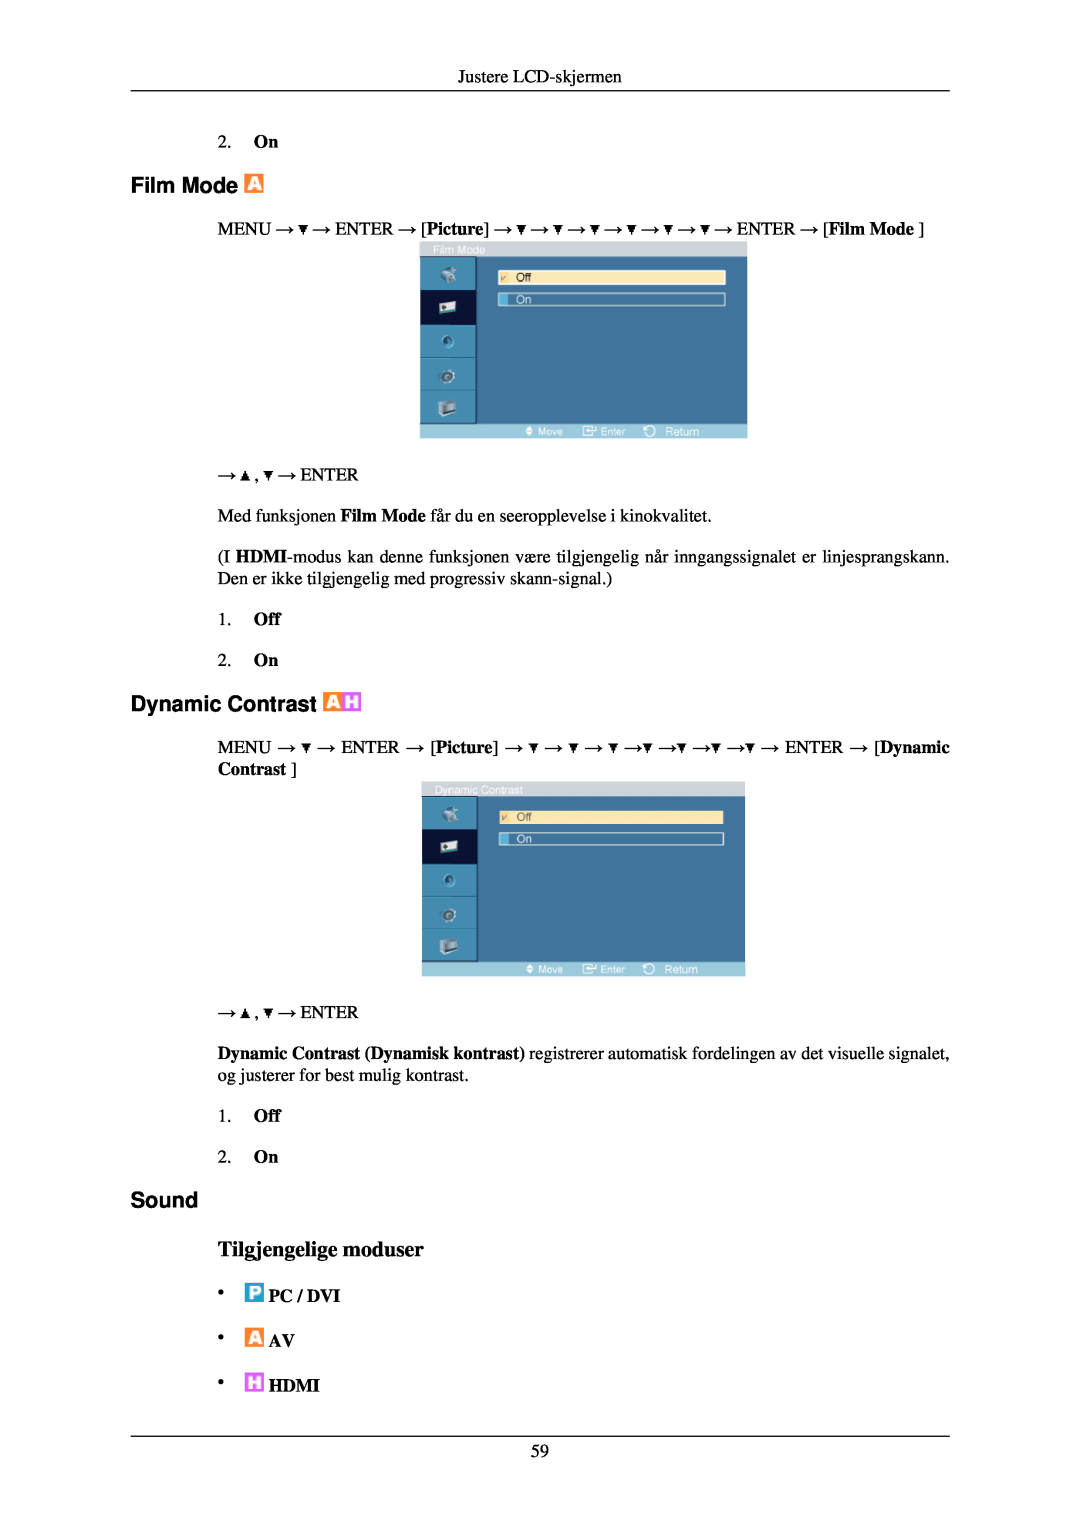 Samsung LH40TCUMBC/EN manual Film Mode, Sound, 2. On, MENU → → ENTER → Picture → → → → → → → → ENTER → Dynamic Contrast 